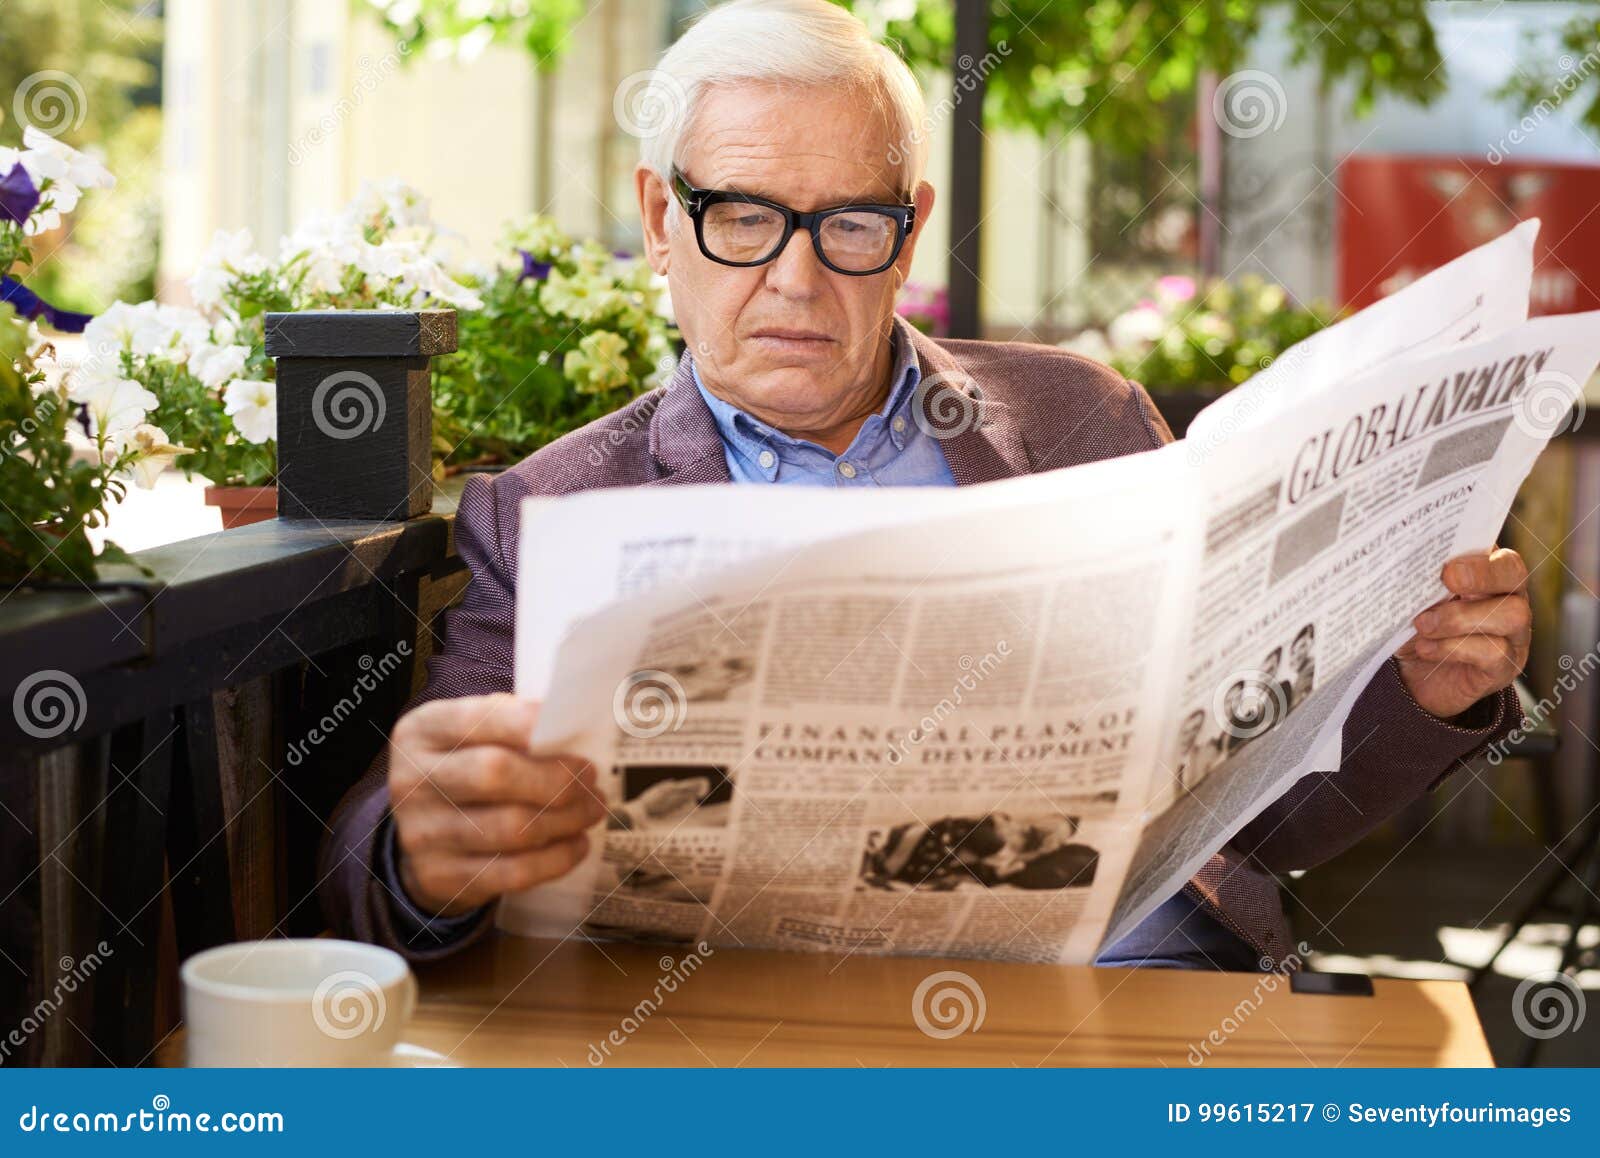 Стала читаемой газетой. Мужчина читает газету в очках. Пожилой человек читает газету. Люди в кафе с газетами. Мужчина с газетой в кафе.